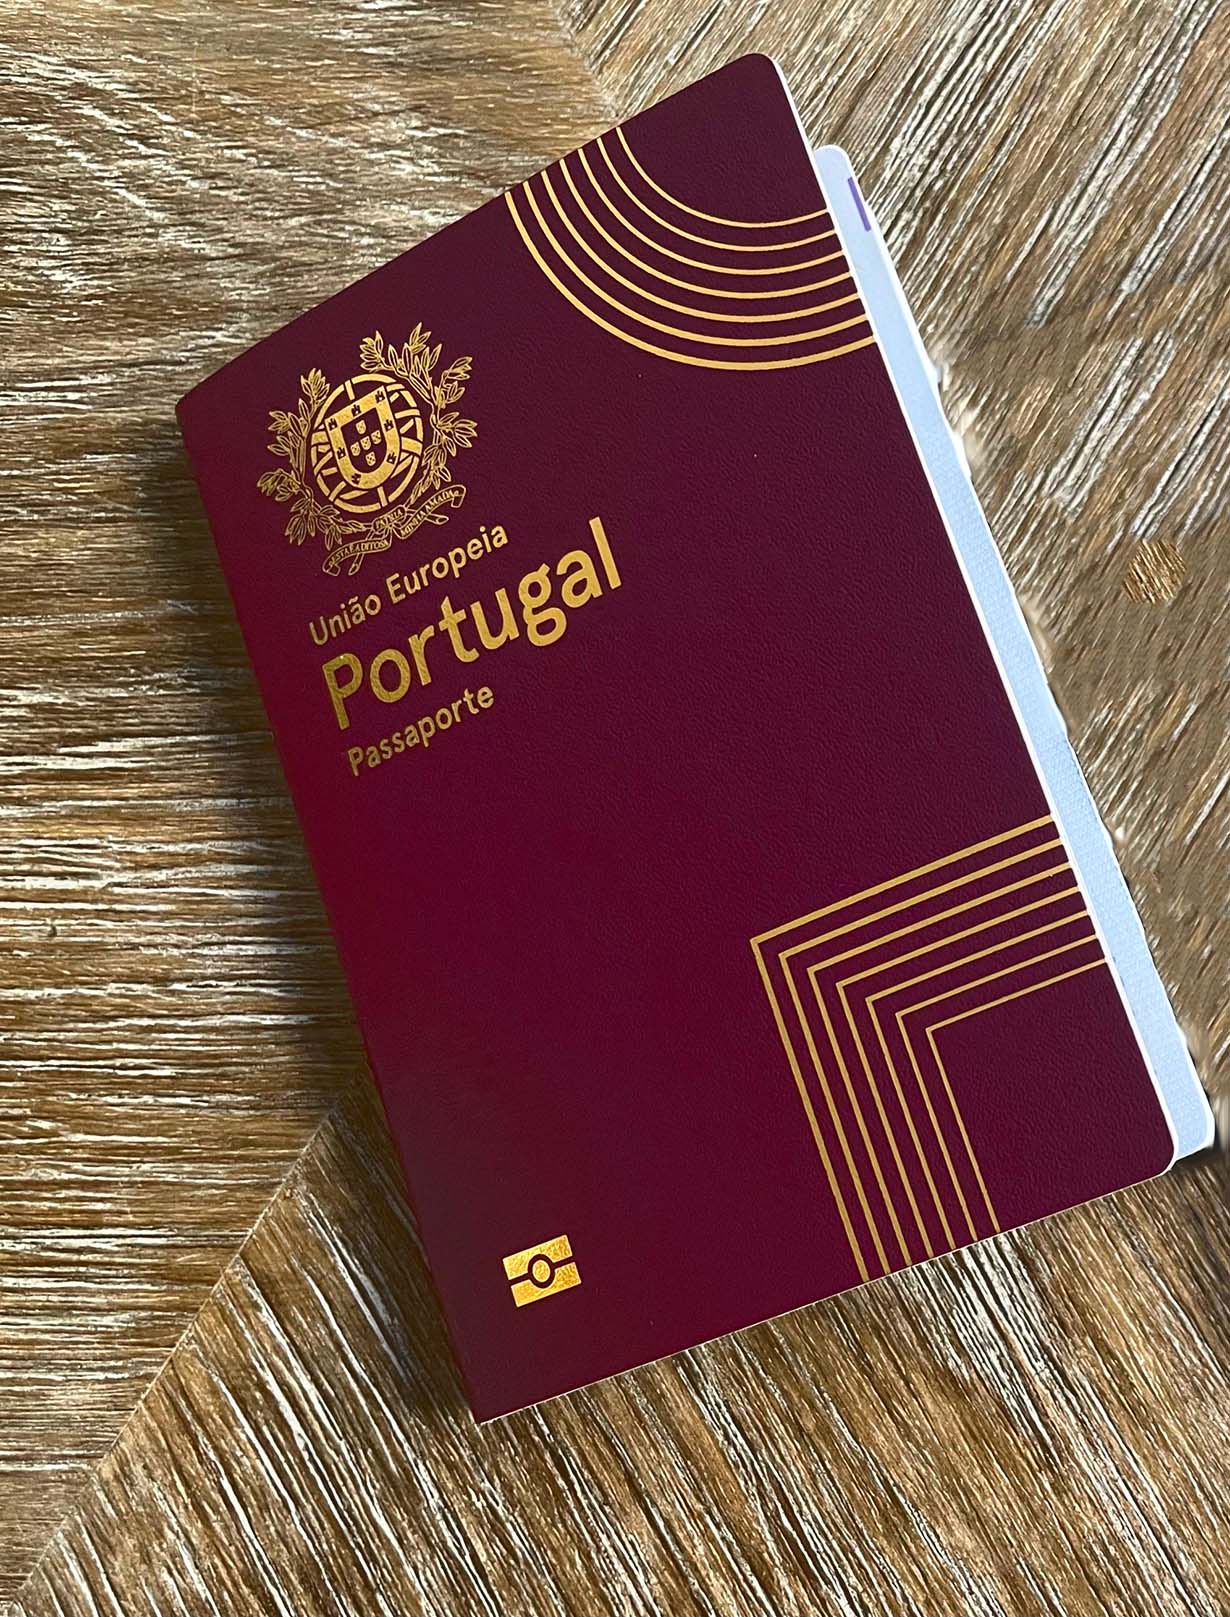 پاسپورت و تابعیت پرتغال از خدمات مهاجرتی پاراگل